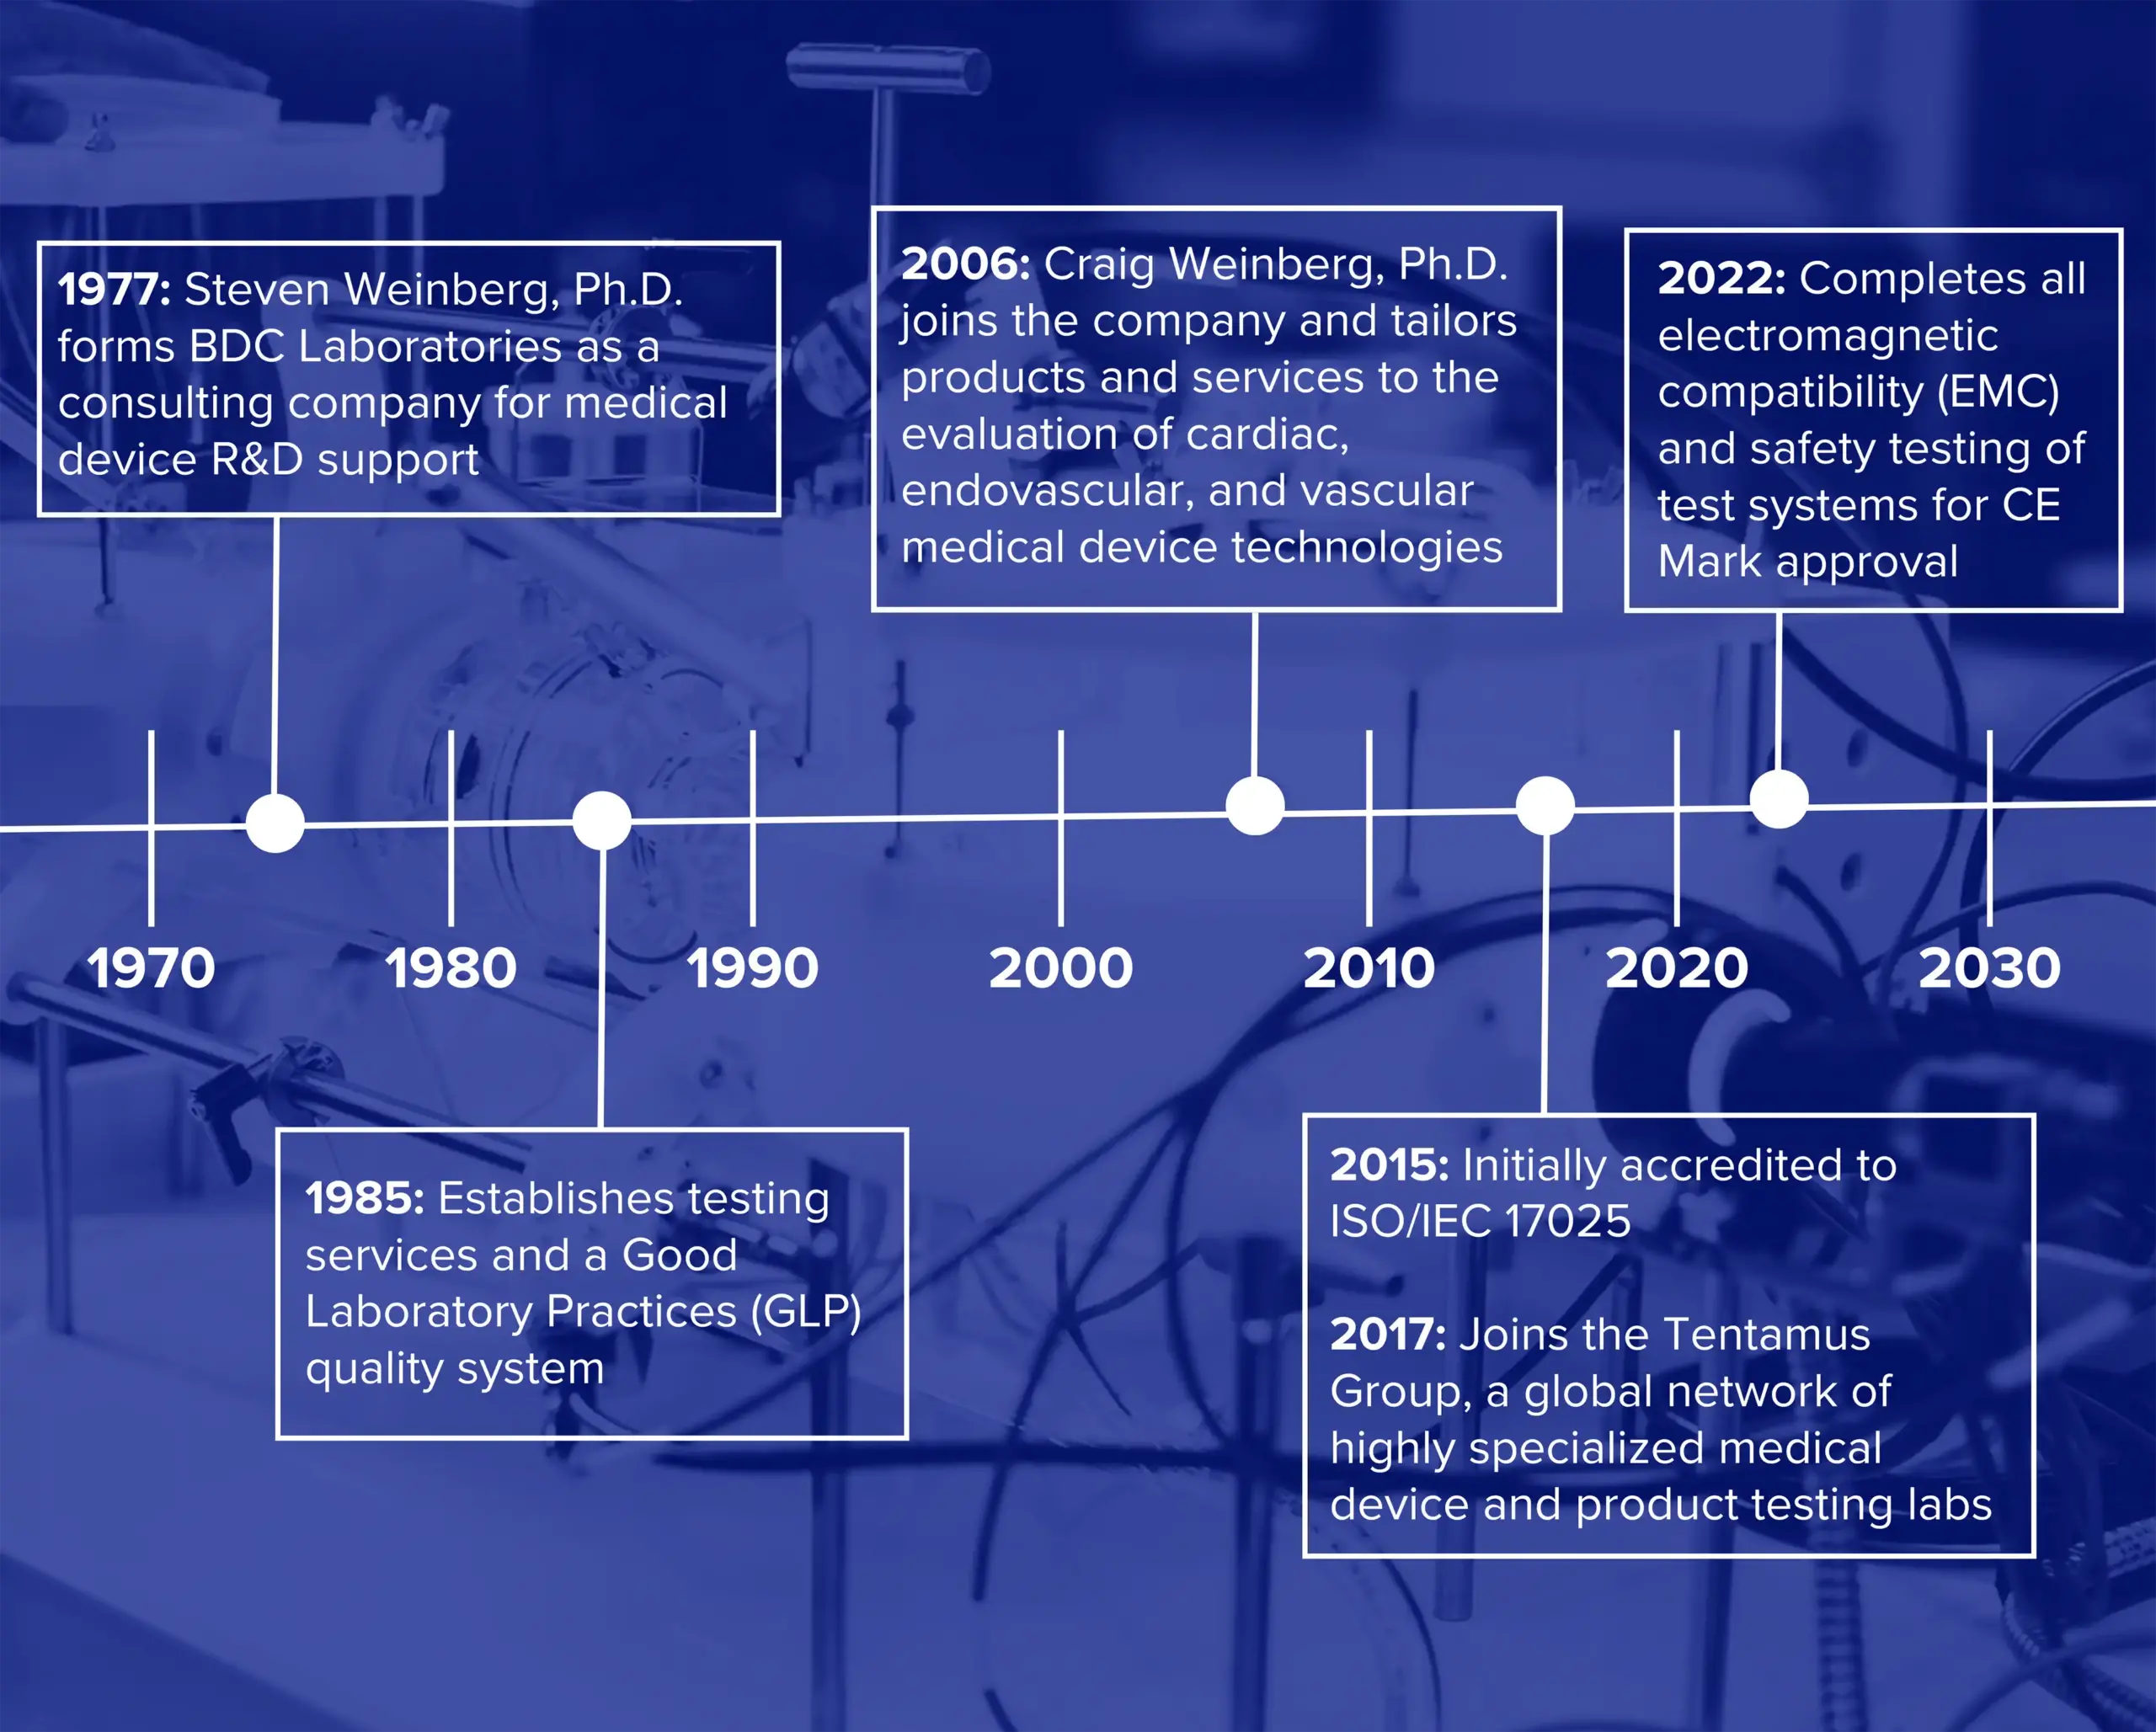 History of BDC Labs